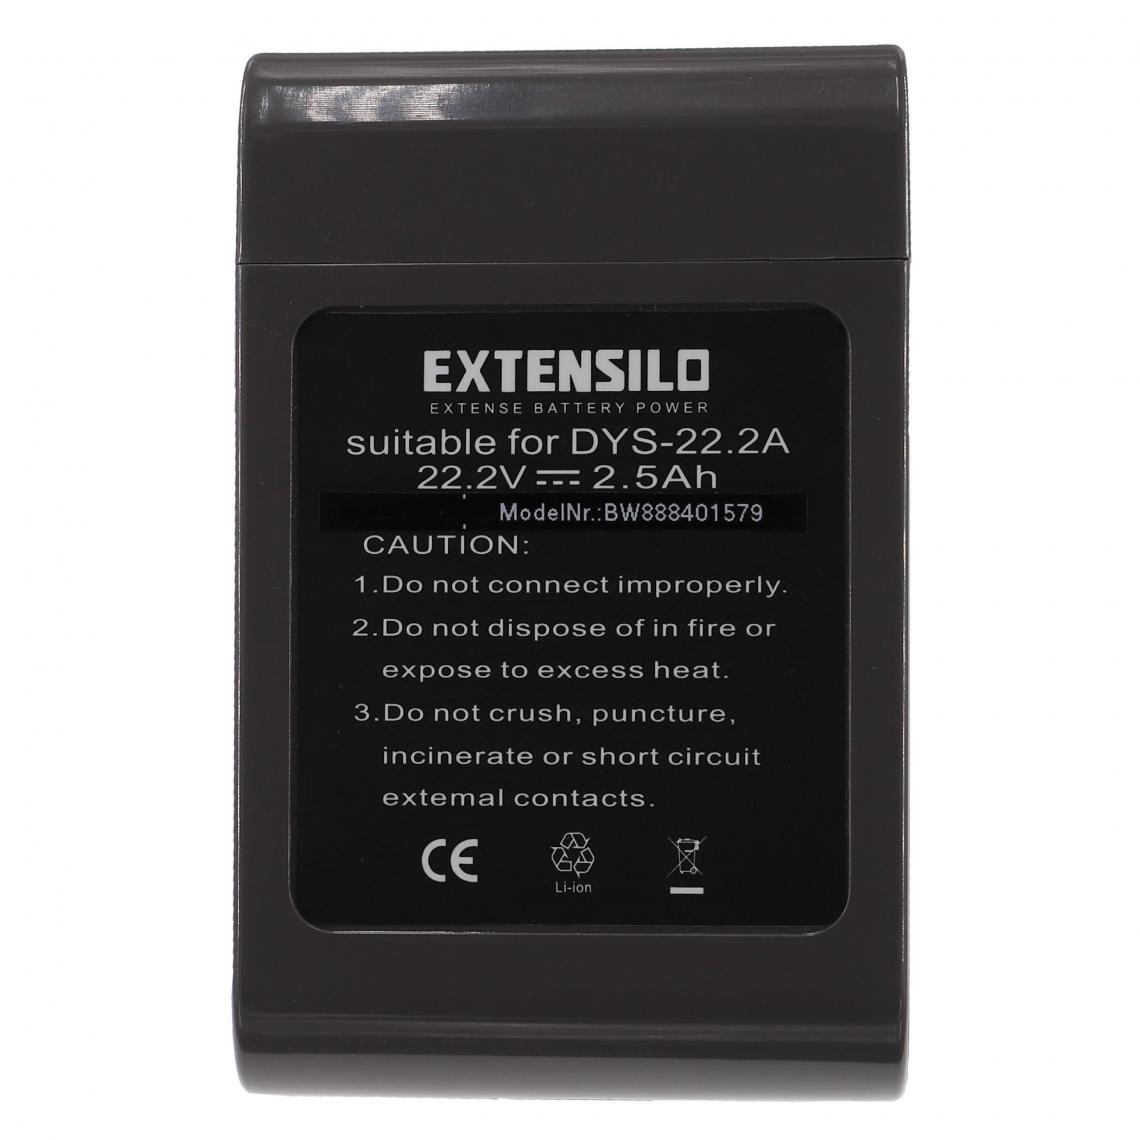 Vhbw - EXTENSILO Batterie compatible avec Dyson DC31 Animal, DC34, DC35, DC34 Animal aspirateur, robot électroménager (2500mAh, 22,2V, Li-ion) - Accessoire entretien des sols